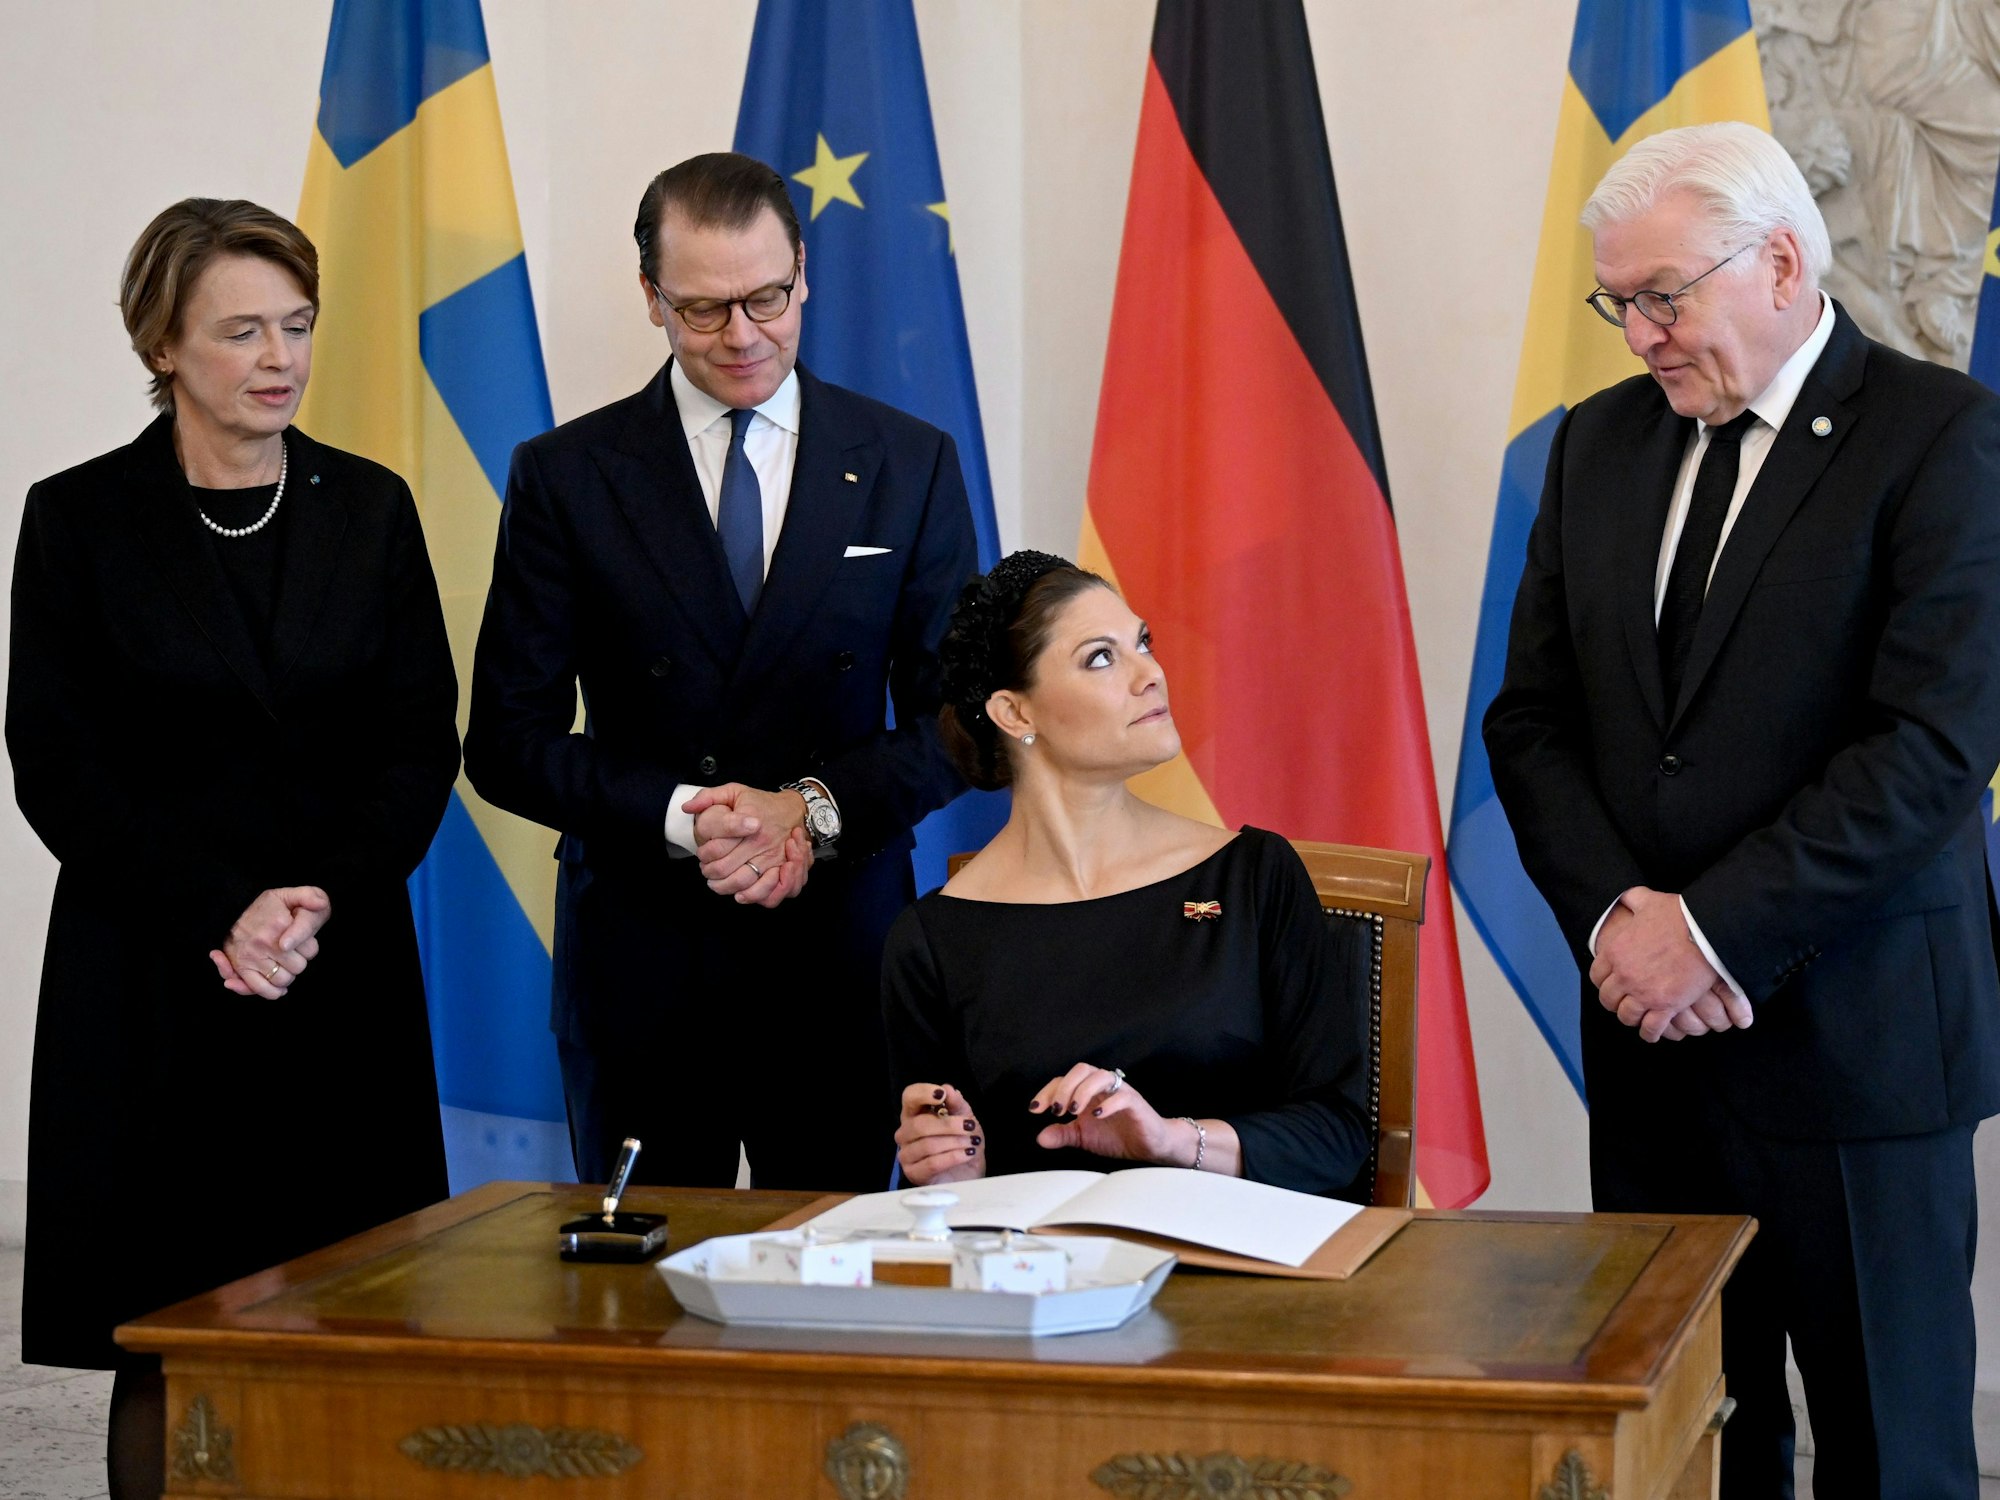 Die schwedische Kronprinzessin Victoria (2.v.r.) und ihr Ehemann Prinz Daniel (2.v.l.) tragen sich in das Gästebuch im Schloss Bellevue ein, während Bundespräsident Frank-Walter Steinmeier (r) und seine Frau Elke Büdenbender (l) hinter ihnen stehen.